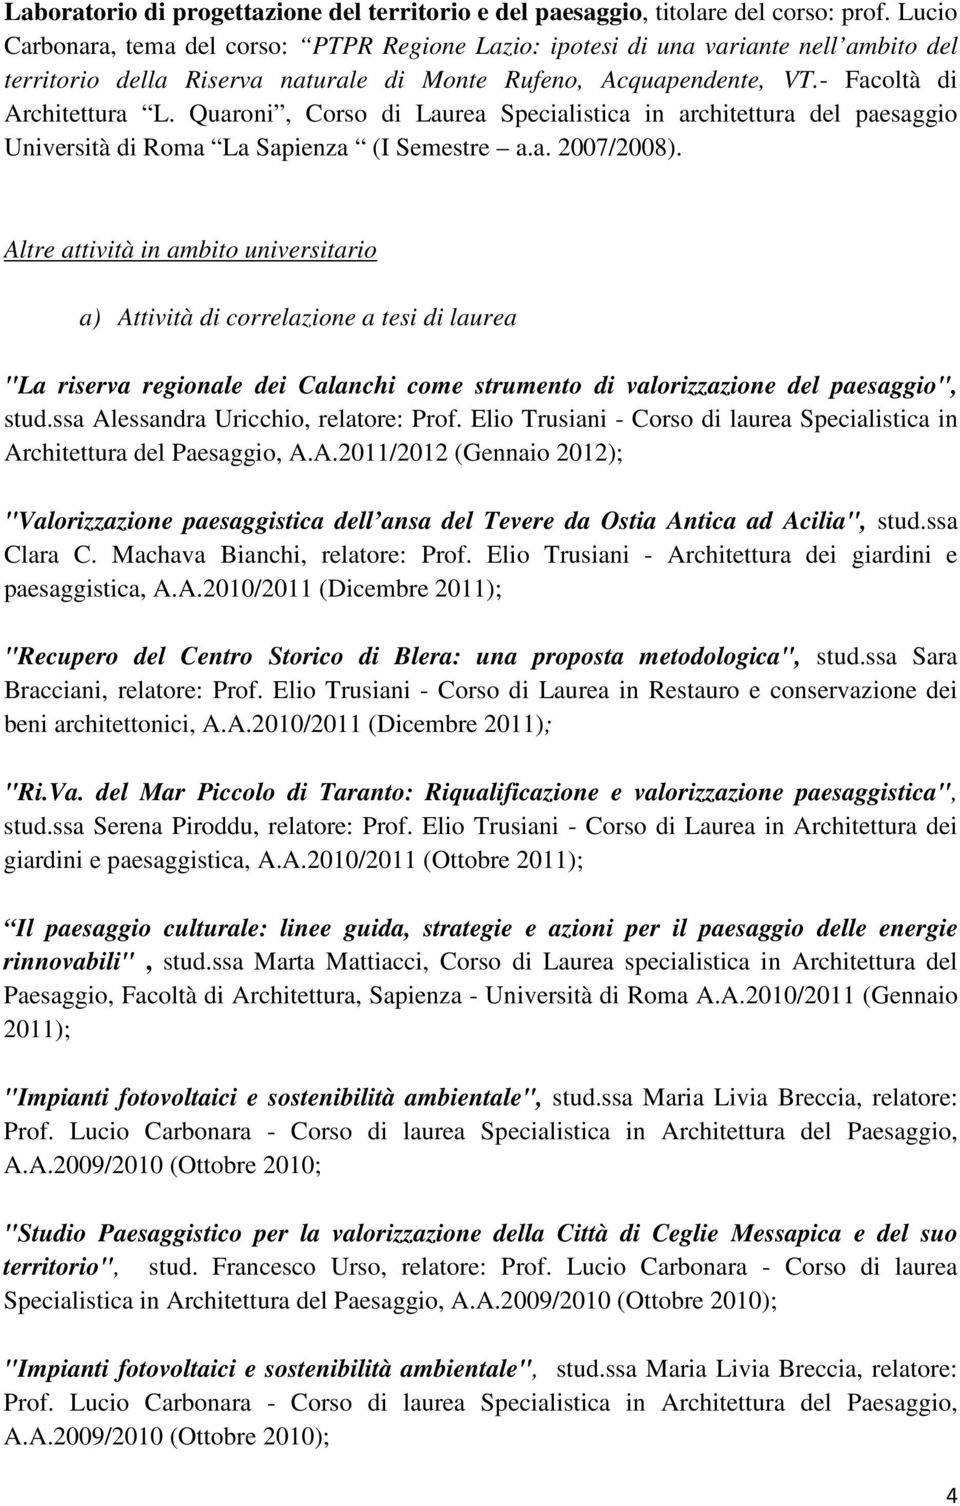 Quaroni, Corso di Laurea Specialistica in architettura del paesaggio Università di Roma La Sapienza (I Semestre a.a. 2007/2008).